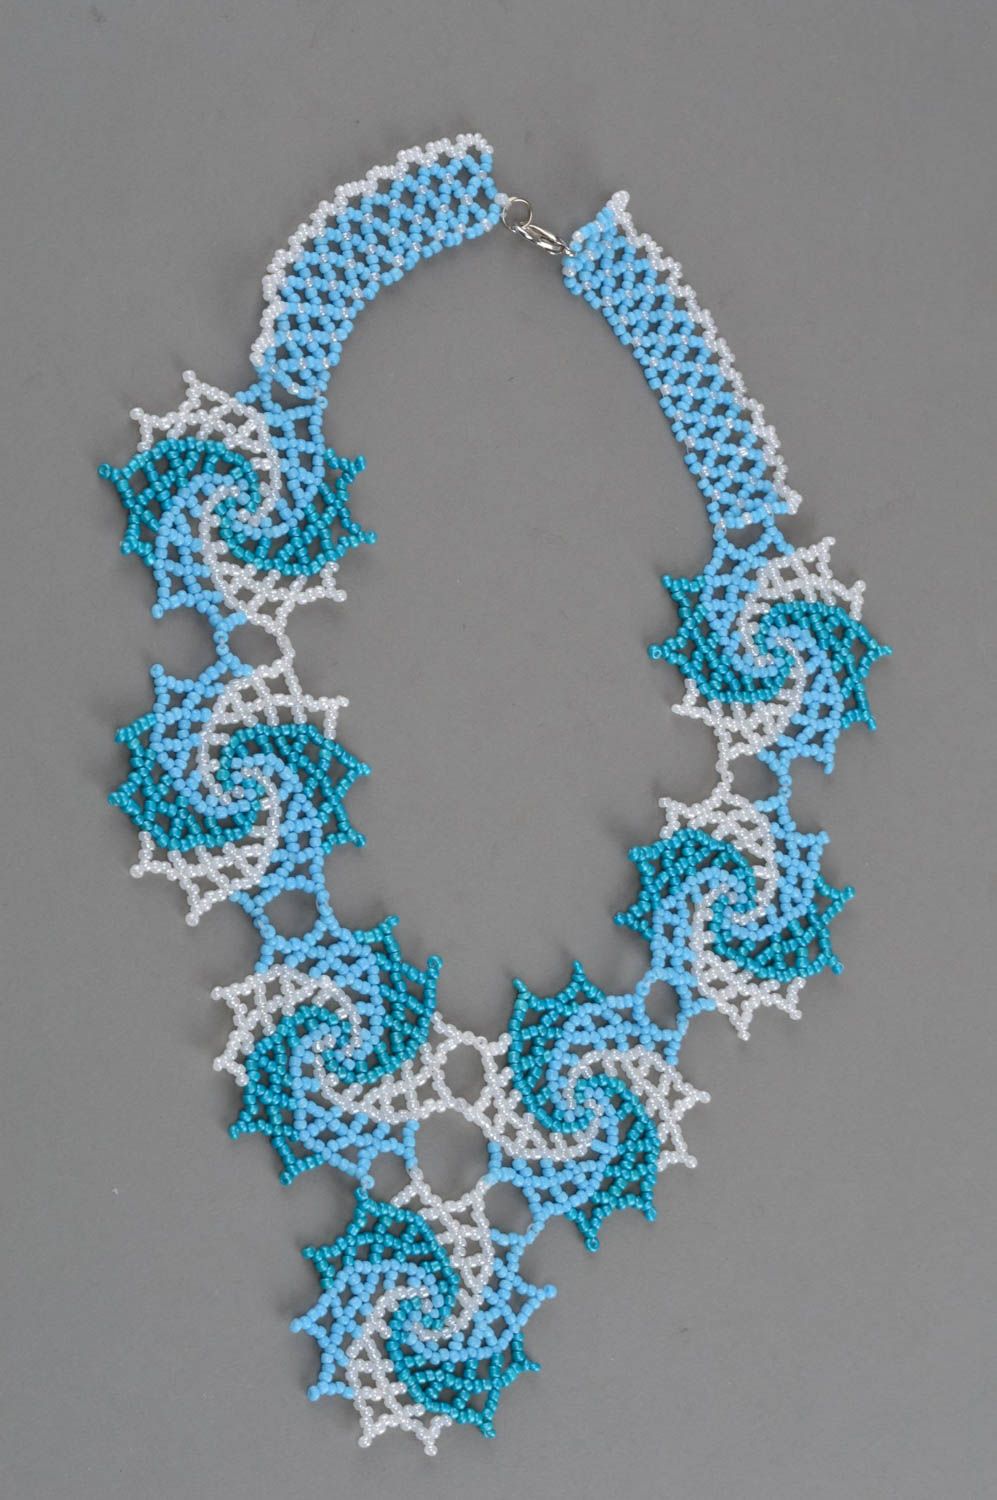 Ожерелье из бисера авторского дизайна голубое с белым красивое ажурное хэнд мейд фото 3